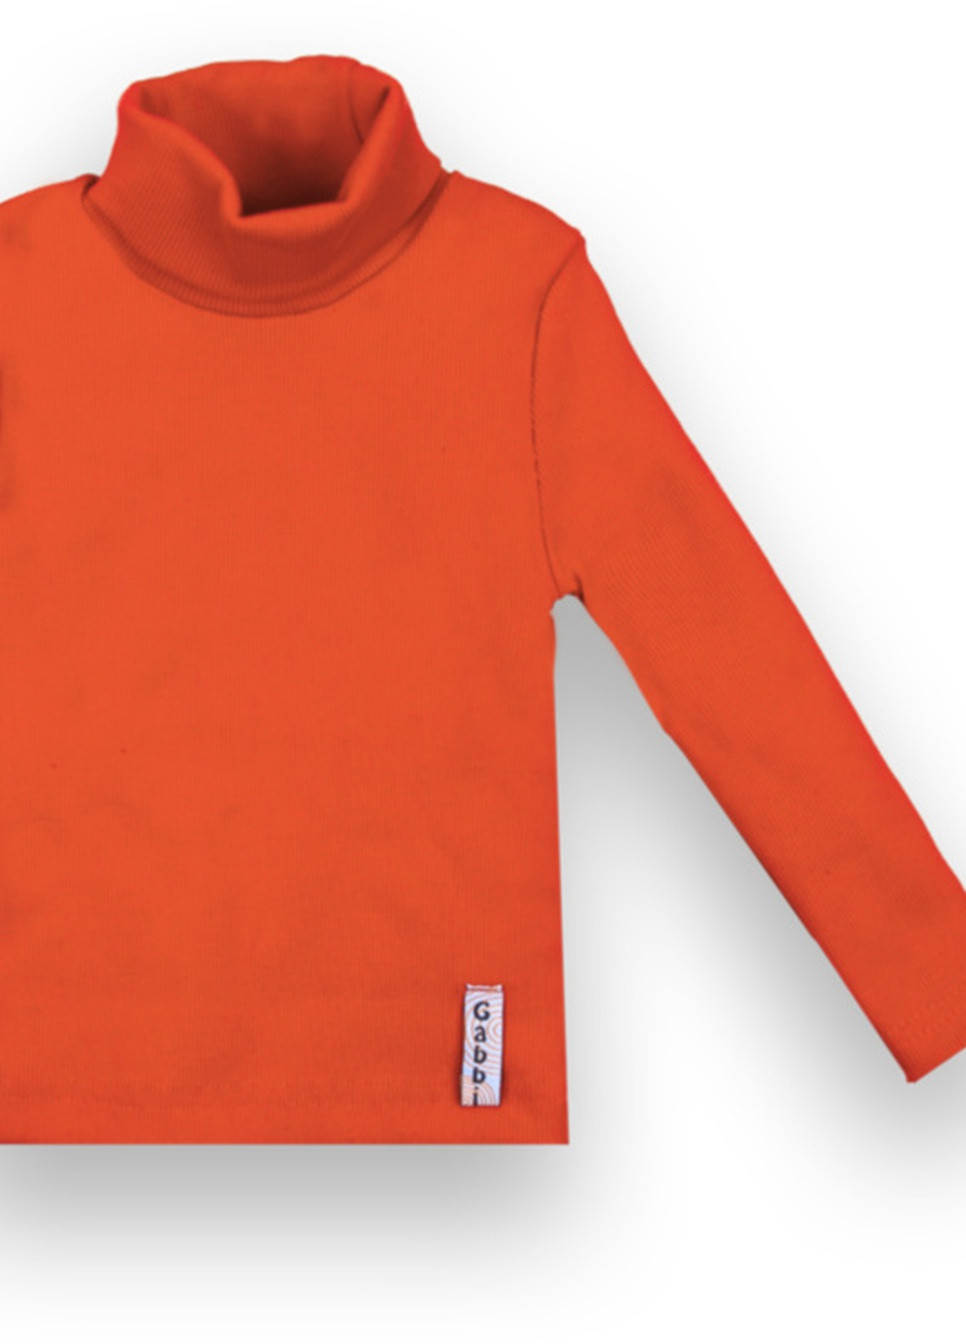 Оранжевый демисезонный детский свитер sv-21-10-2 *стиль* Габби